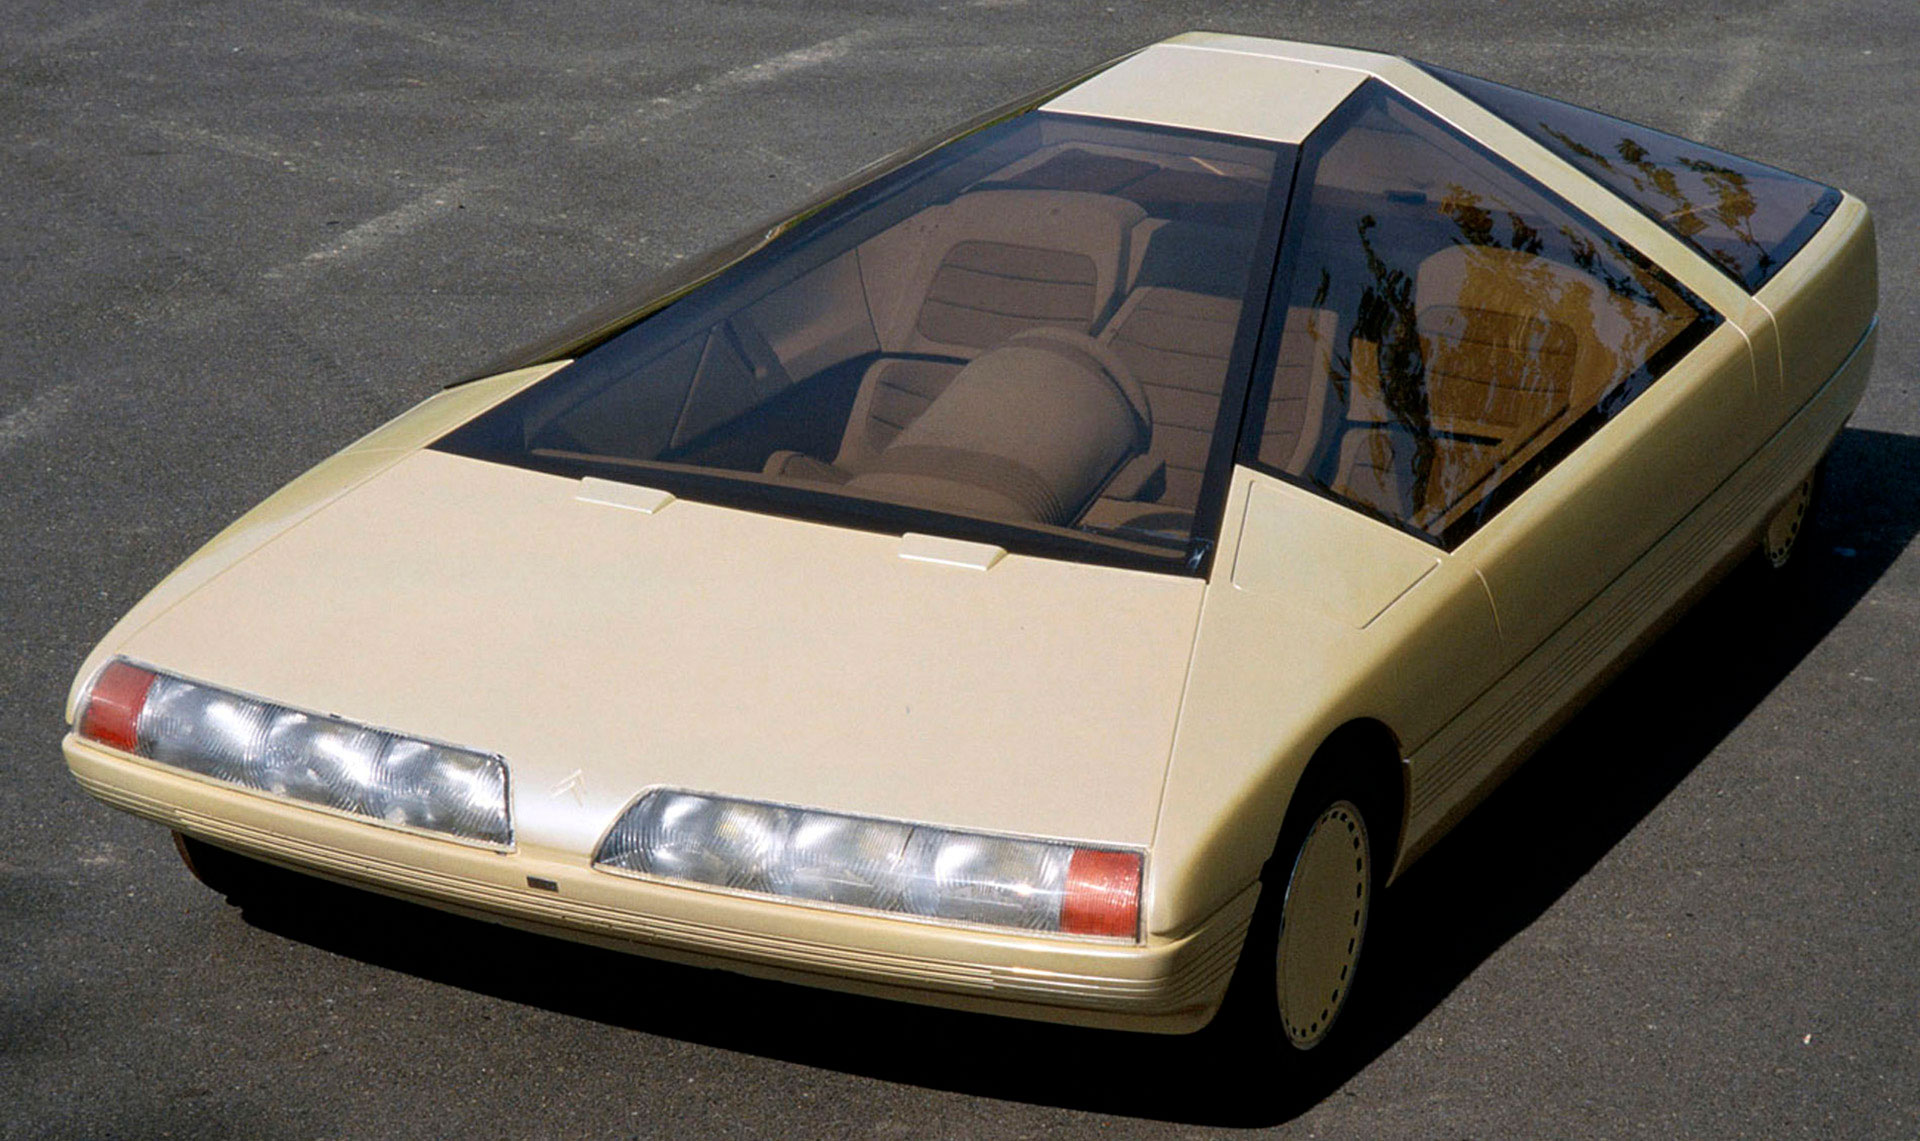 Citroën Karin, probablemente el protitipo perfecto entre el concepto de auto de los 70, anclado en el exterior, y de los 80 donde todo era tecnología